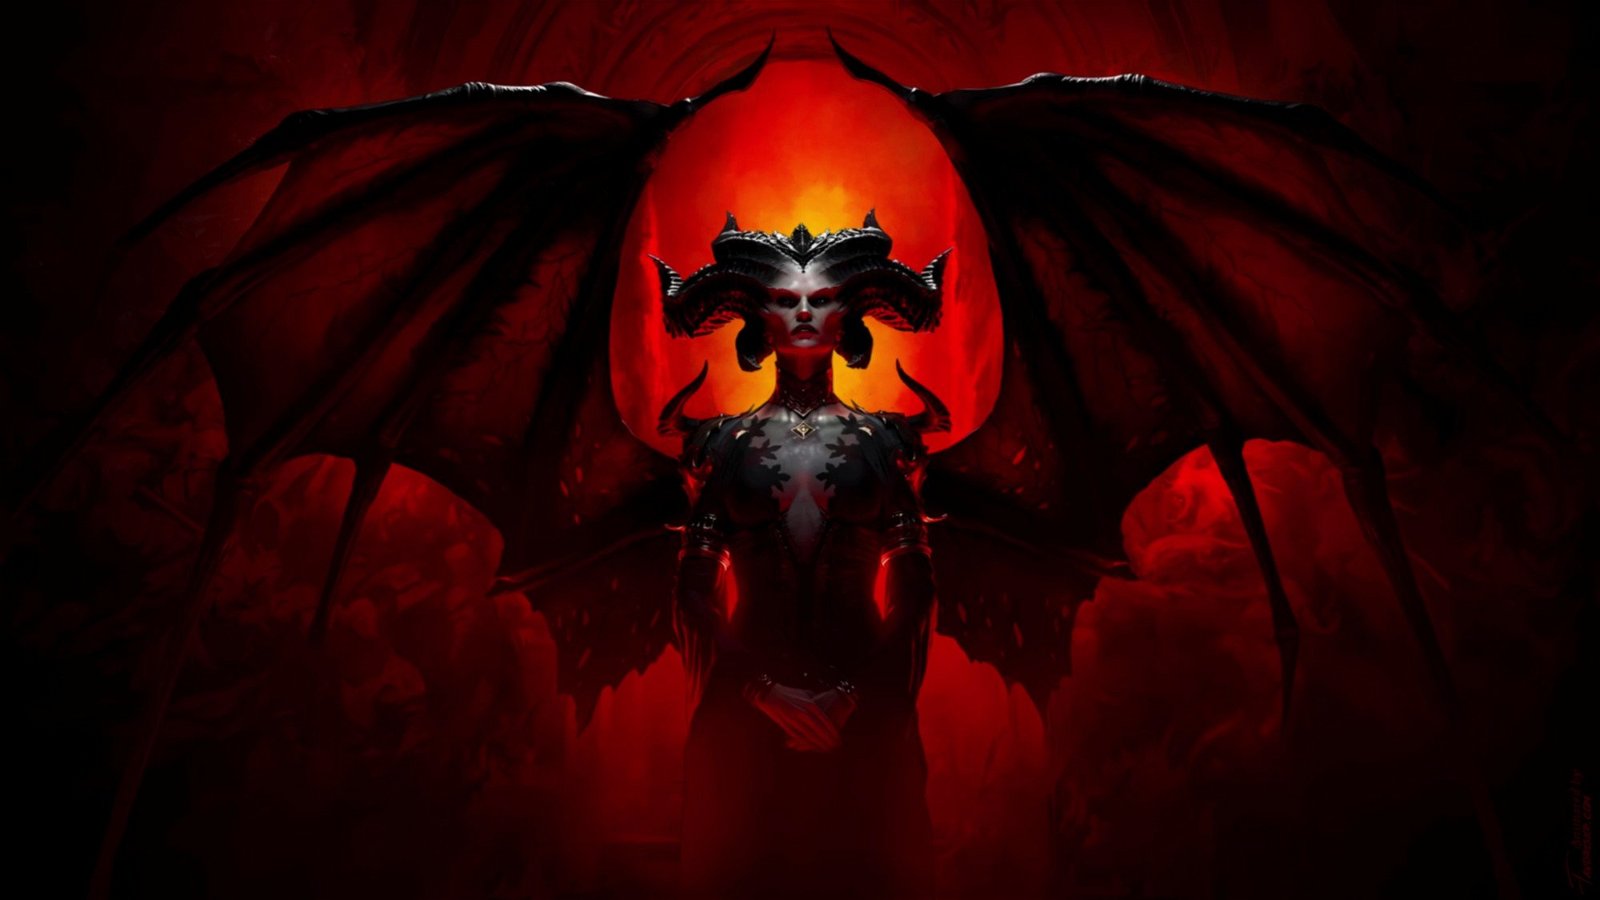 Immagine di Diablo raggiunge i 100 milioni di giocatori, grande successo per la serie